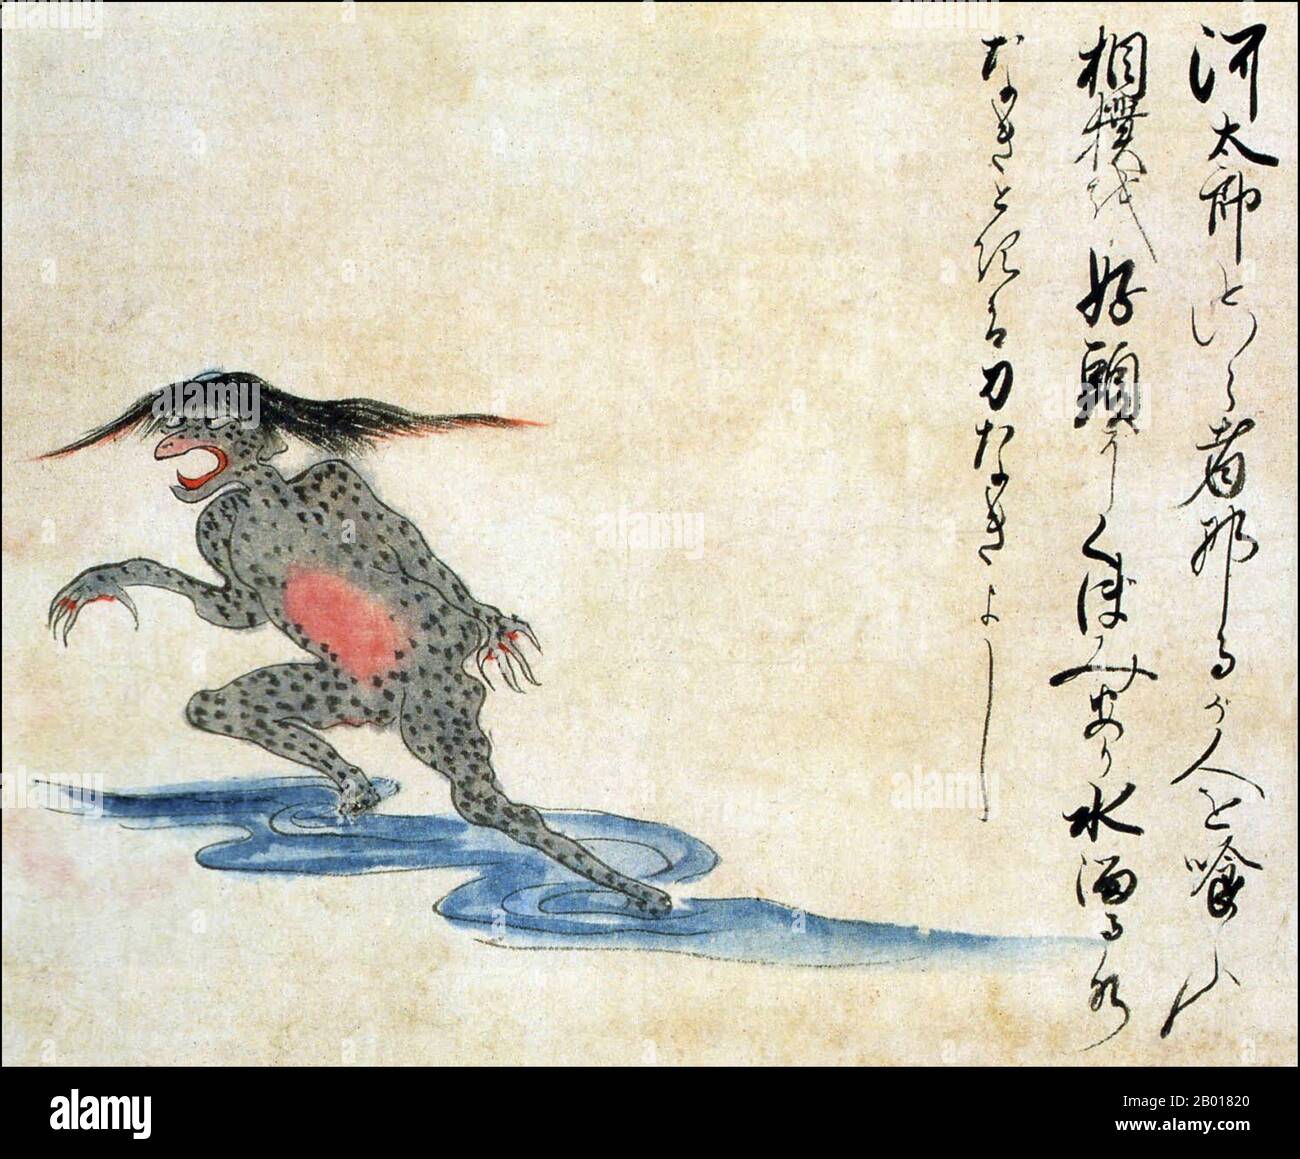 Japon: Une imp. D'eau 'kawataro'.Du Kaikidan Ekotoba Monster Scroll, au milieu du 19th siècle.Le kawataro est une variété de kappa ou d'eau qui aime manger des gens et pratiquer le sumo.Une indentation sur la tête de la créature est remplie d'eau.Le kawataro devient faible lorsque l'eau s'écoule.Le Kaikidan Ekotoba est un handscroll du milieu du 19th siècle qui présente 33 monstres légendaires et odyties humaines, principalement de la région de Kyushu au Japon, mais avec plusieurs d'autres pays, y compris la Chine, la Russie et la Corée. Banque D'Images